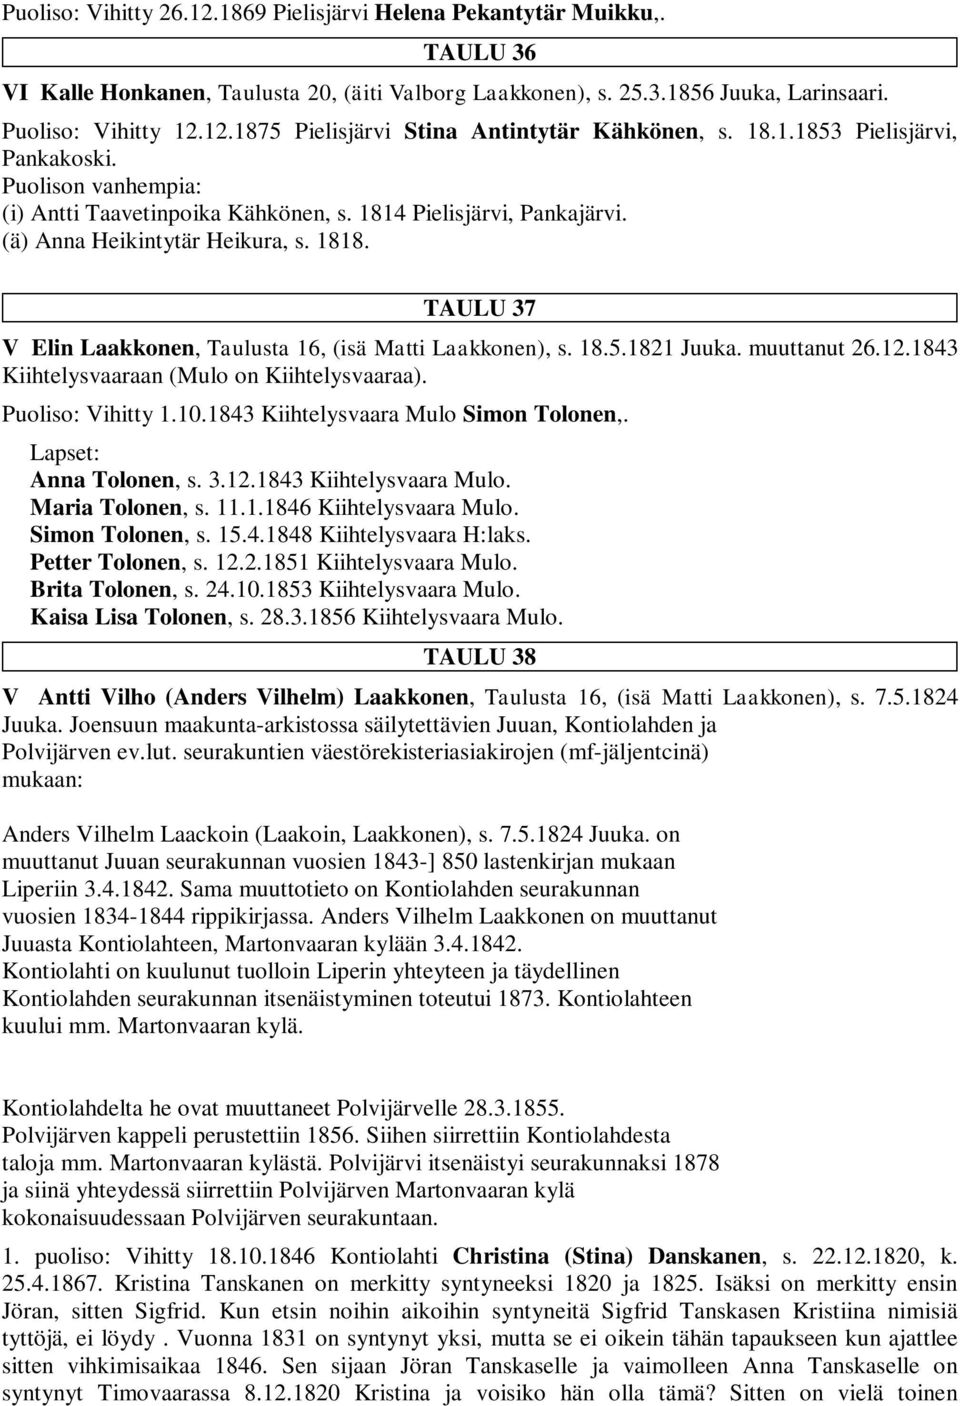 TAULU 37 V Elin Laakkonen, Taulusta 16, (isä Matti Laakkonen), s. 18.5.1821 Juuka. muuttanut 26.12.1843 Kiihtelysvaaraan (Mulo on Kiihtelysvaaraa). Puoliso: Vihitty 1.10.